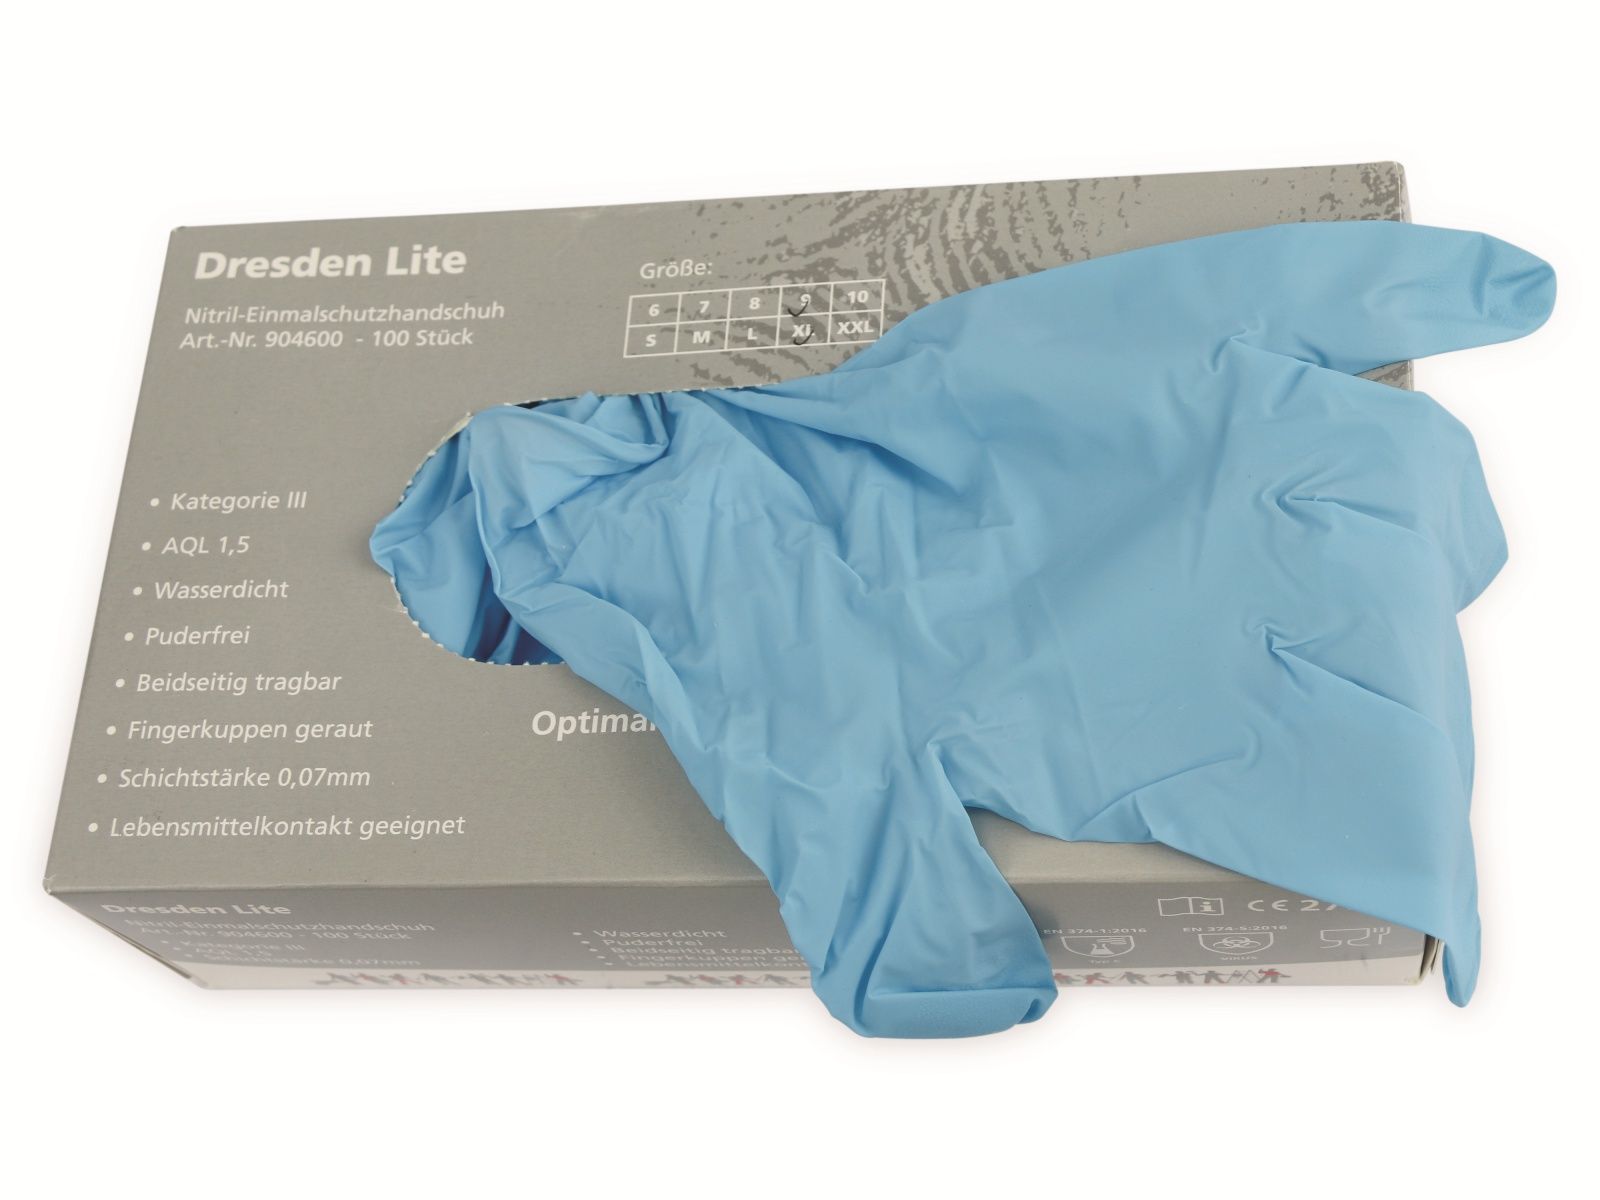 HASE SAFETY GLOVES Einweghandschuhe aus Nitril, EN 374-1, EN 420, Größe 9, 100 Stück von Hase Safety gloves